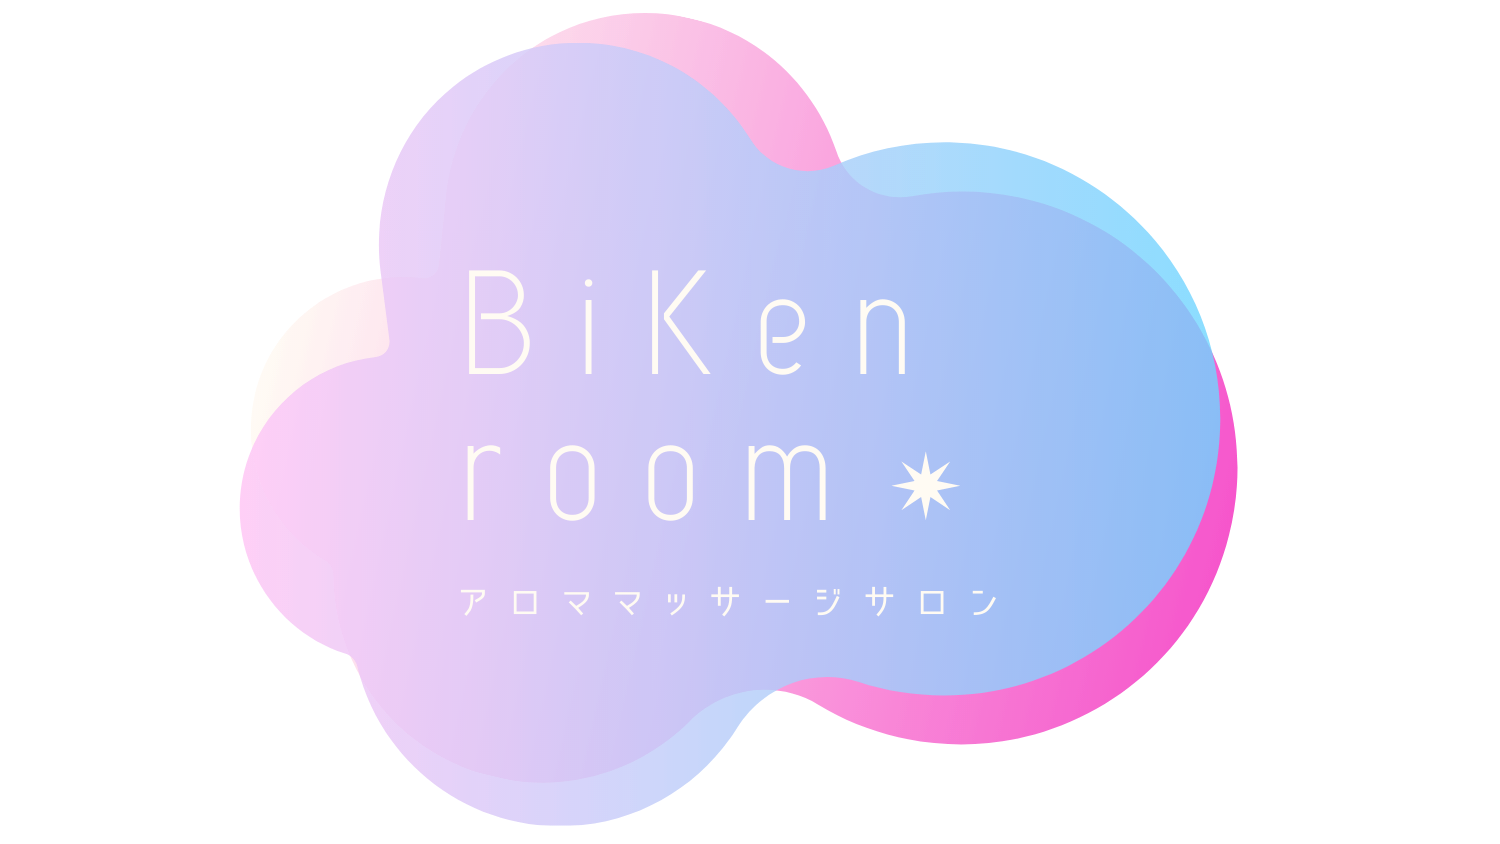 BiKen room